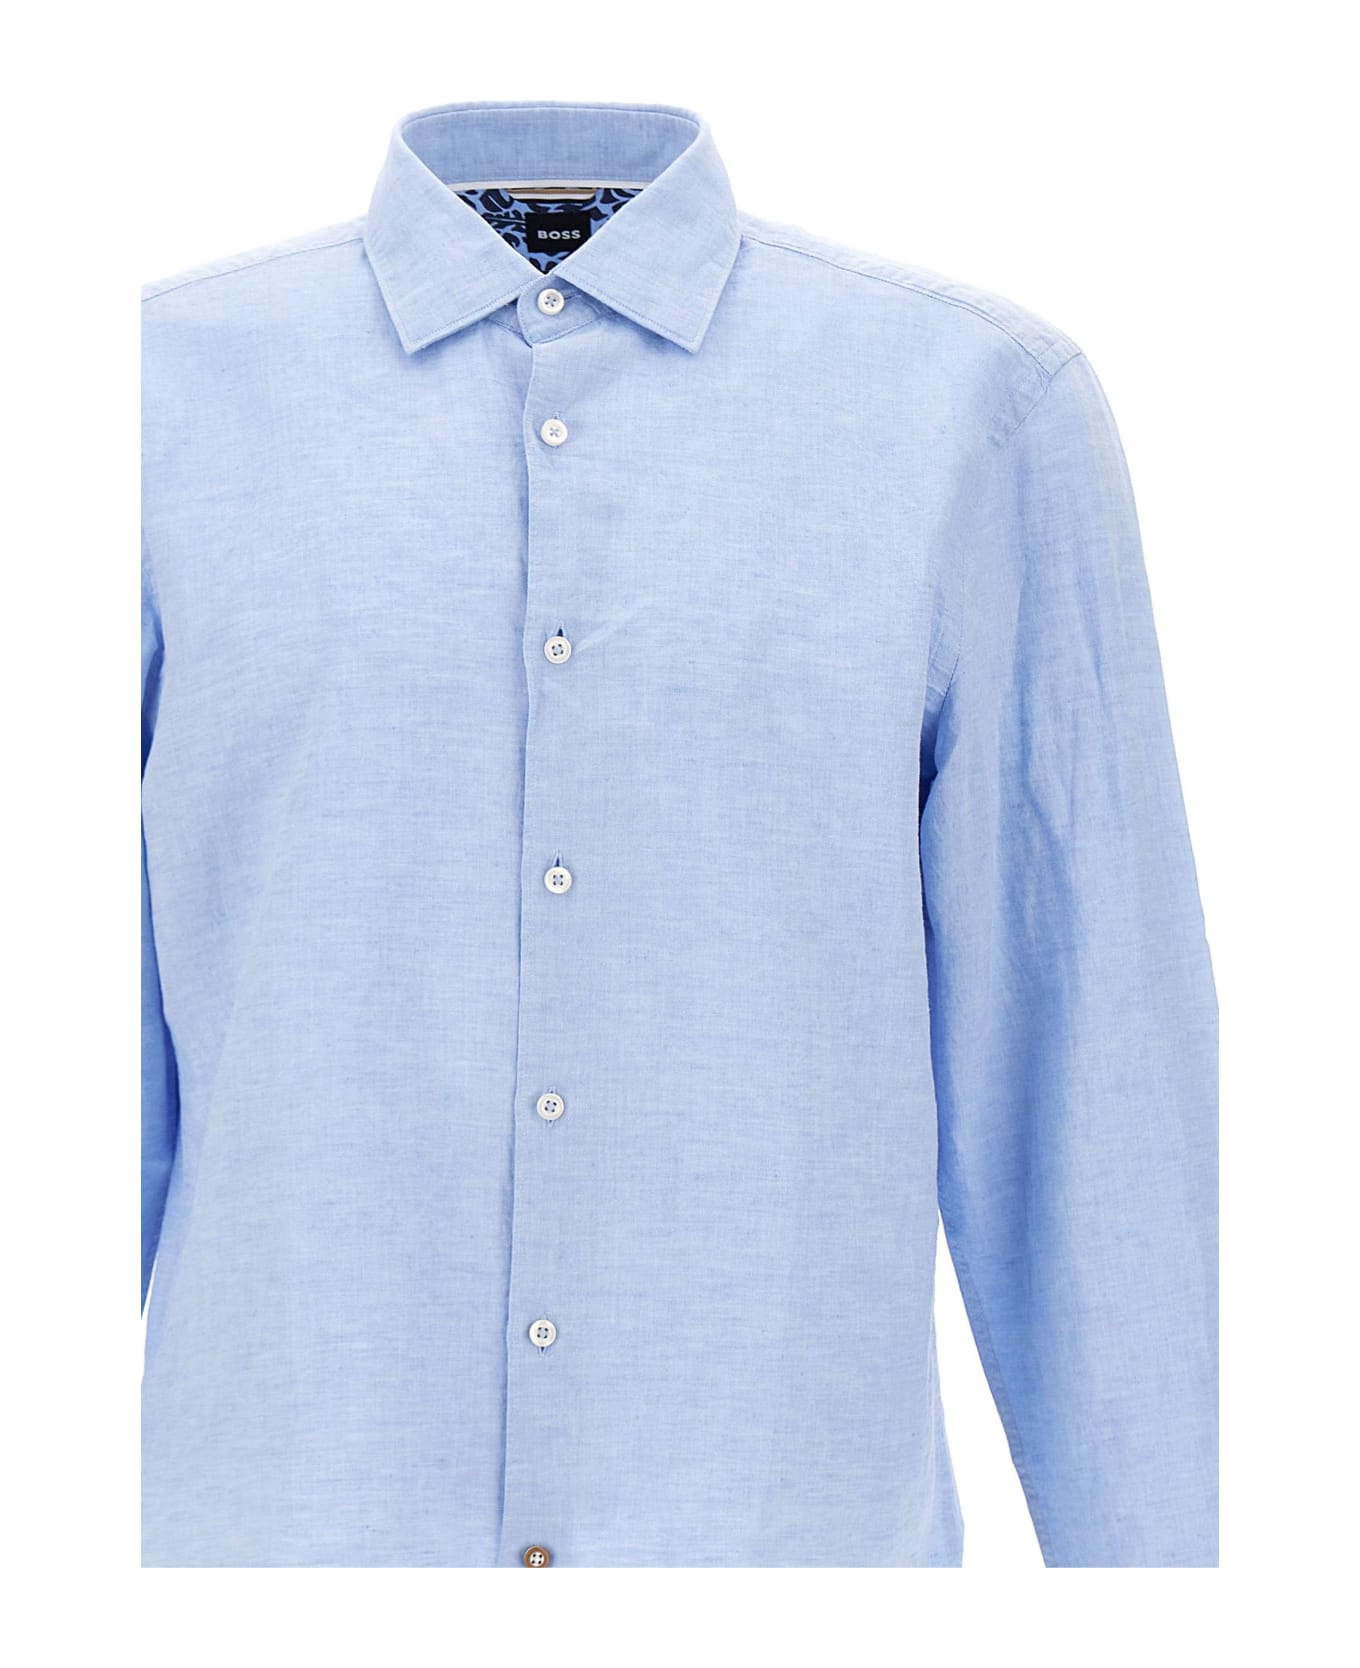 Hugo Boss "c-hal-kent" Cotton And Linen Shirt - BLUE